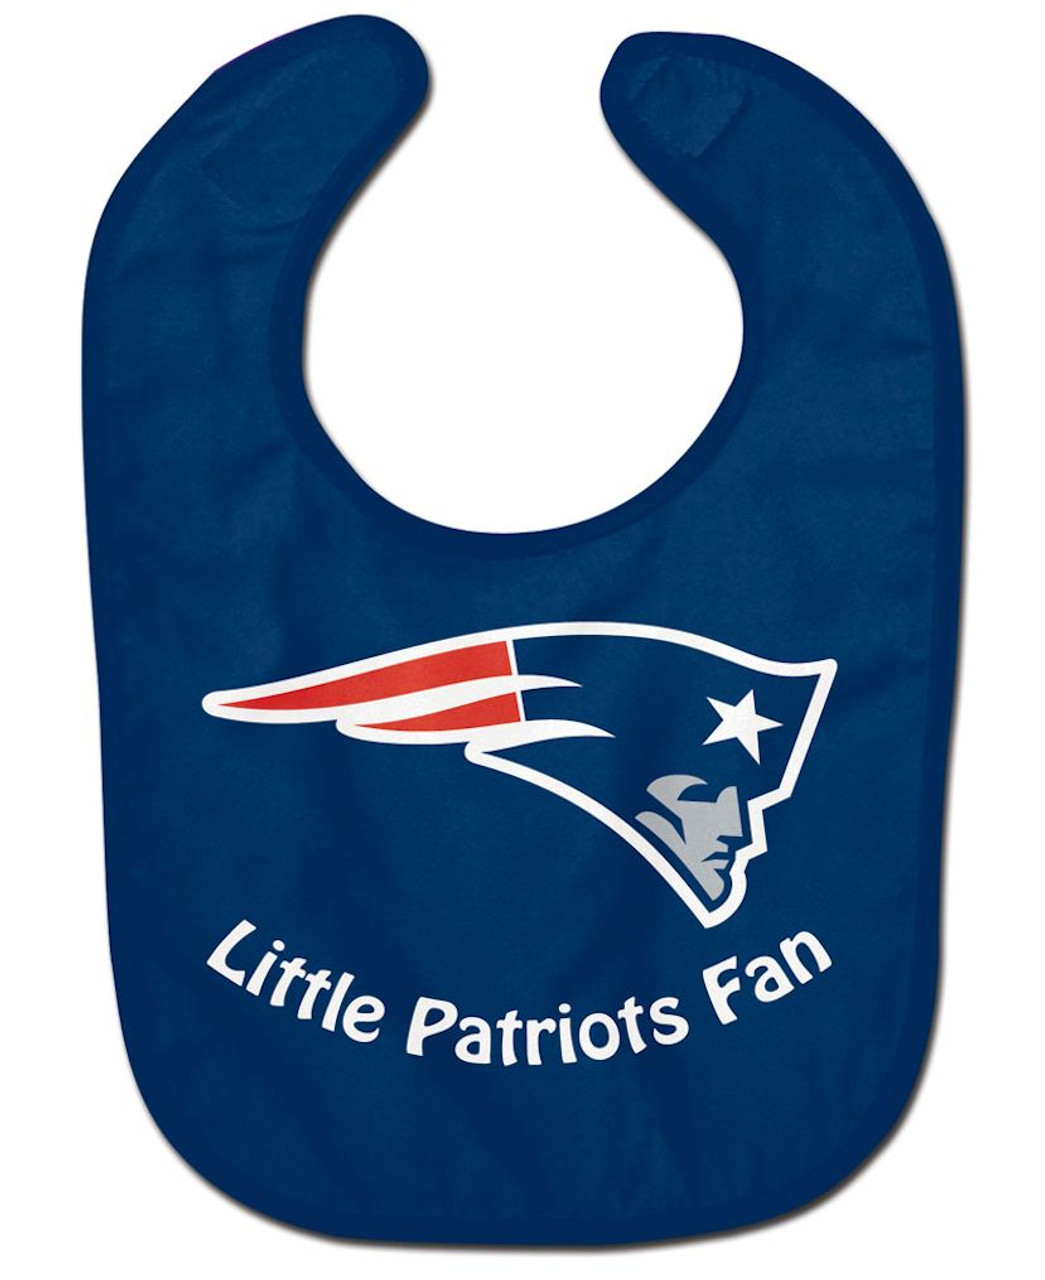 New England Patriots All Pro Little Fan Baby Bib - Sports Fan Shop